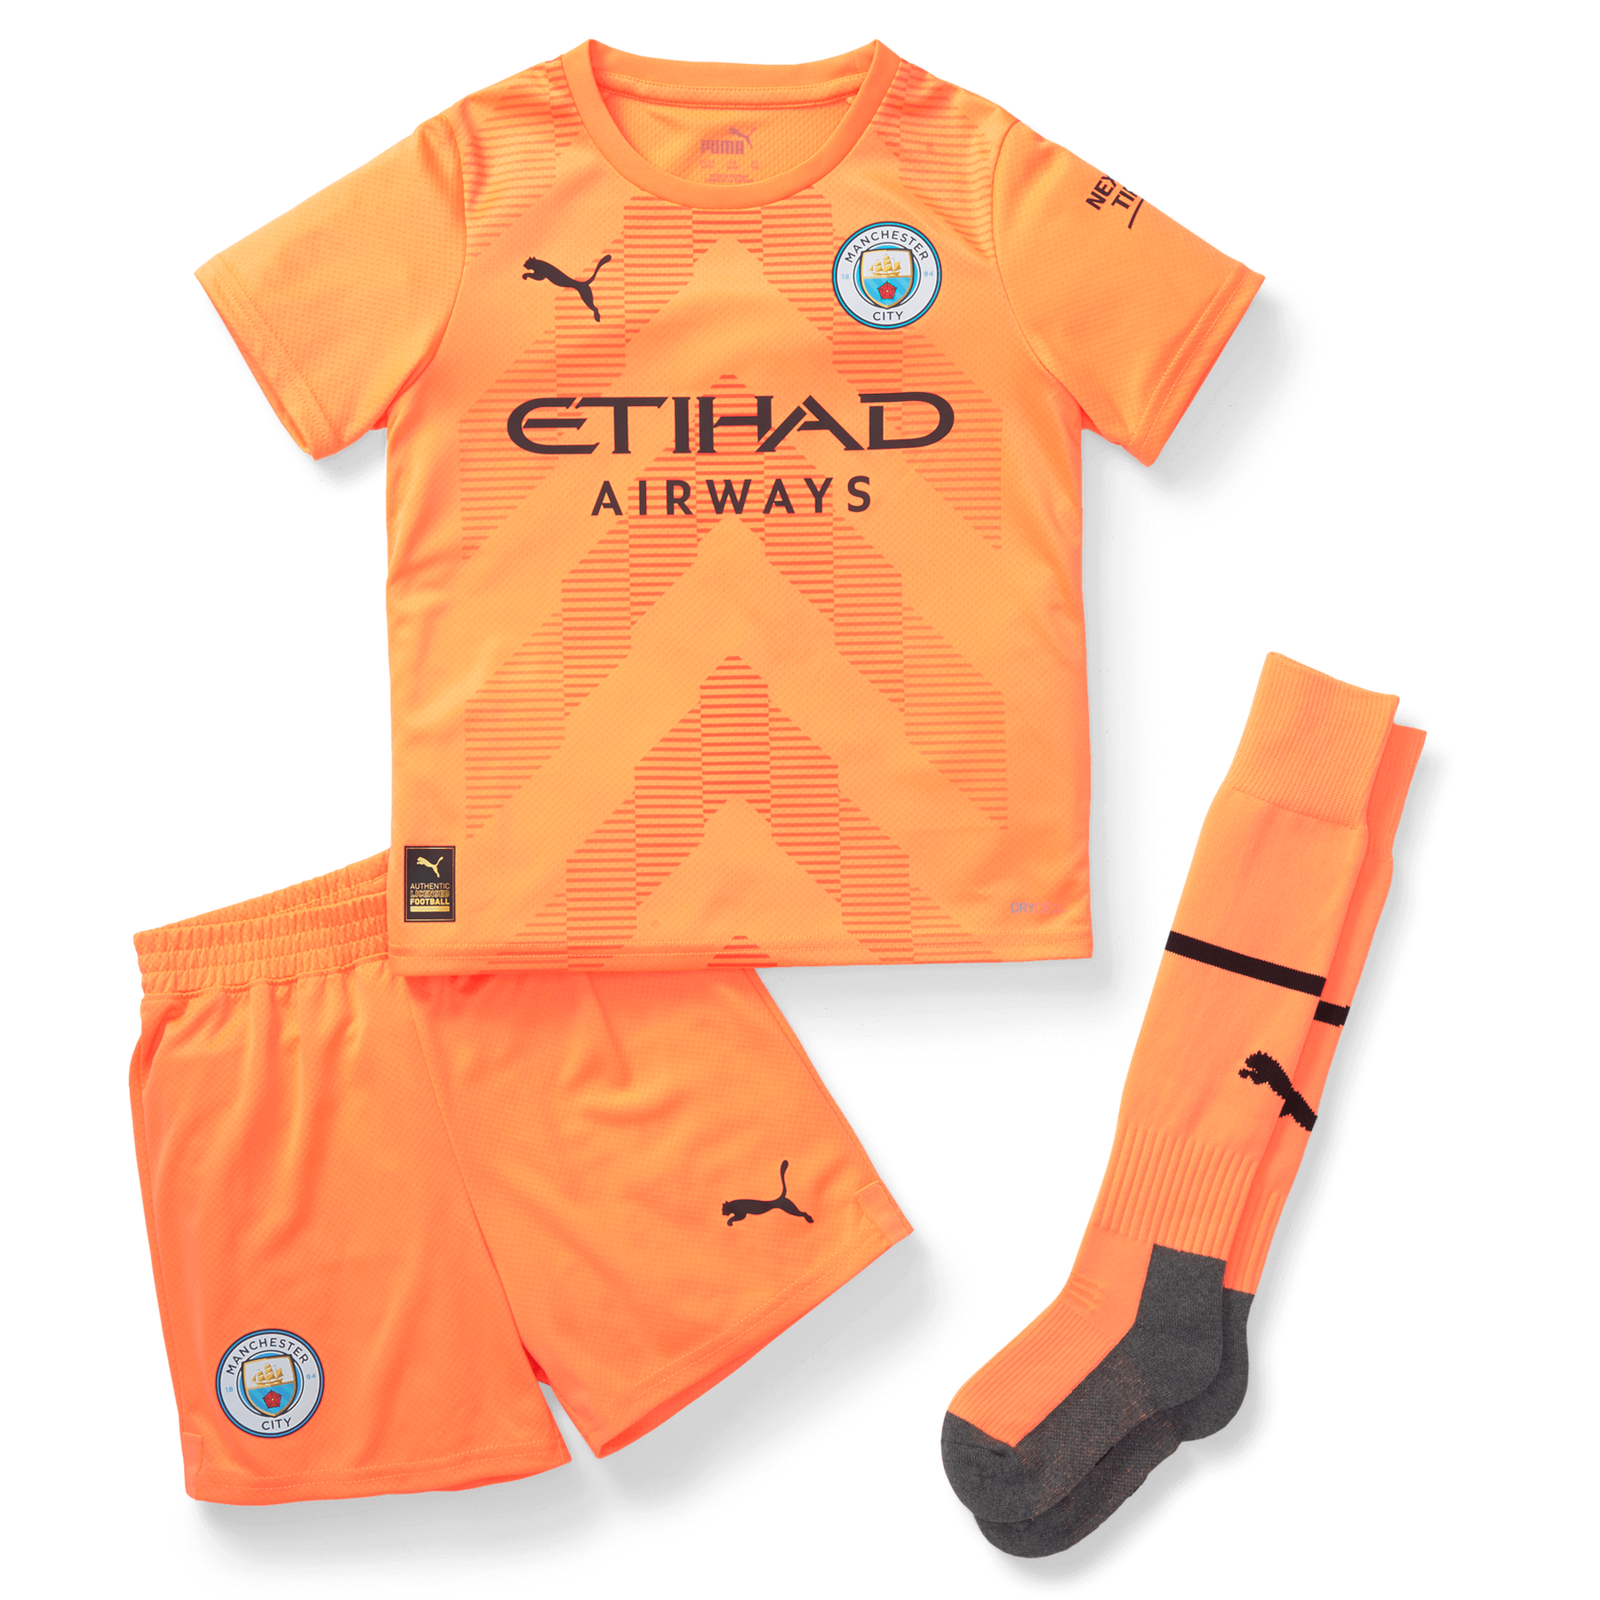 Full Manchester City home kit and goalkeeper kit leaked for 2021/22 season  - Manchester Evening News